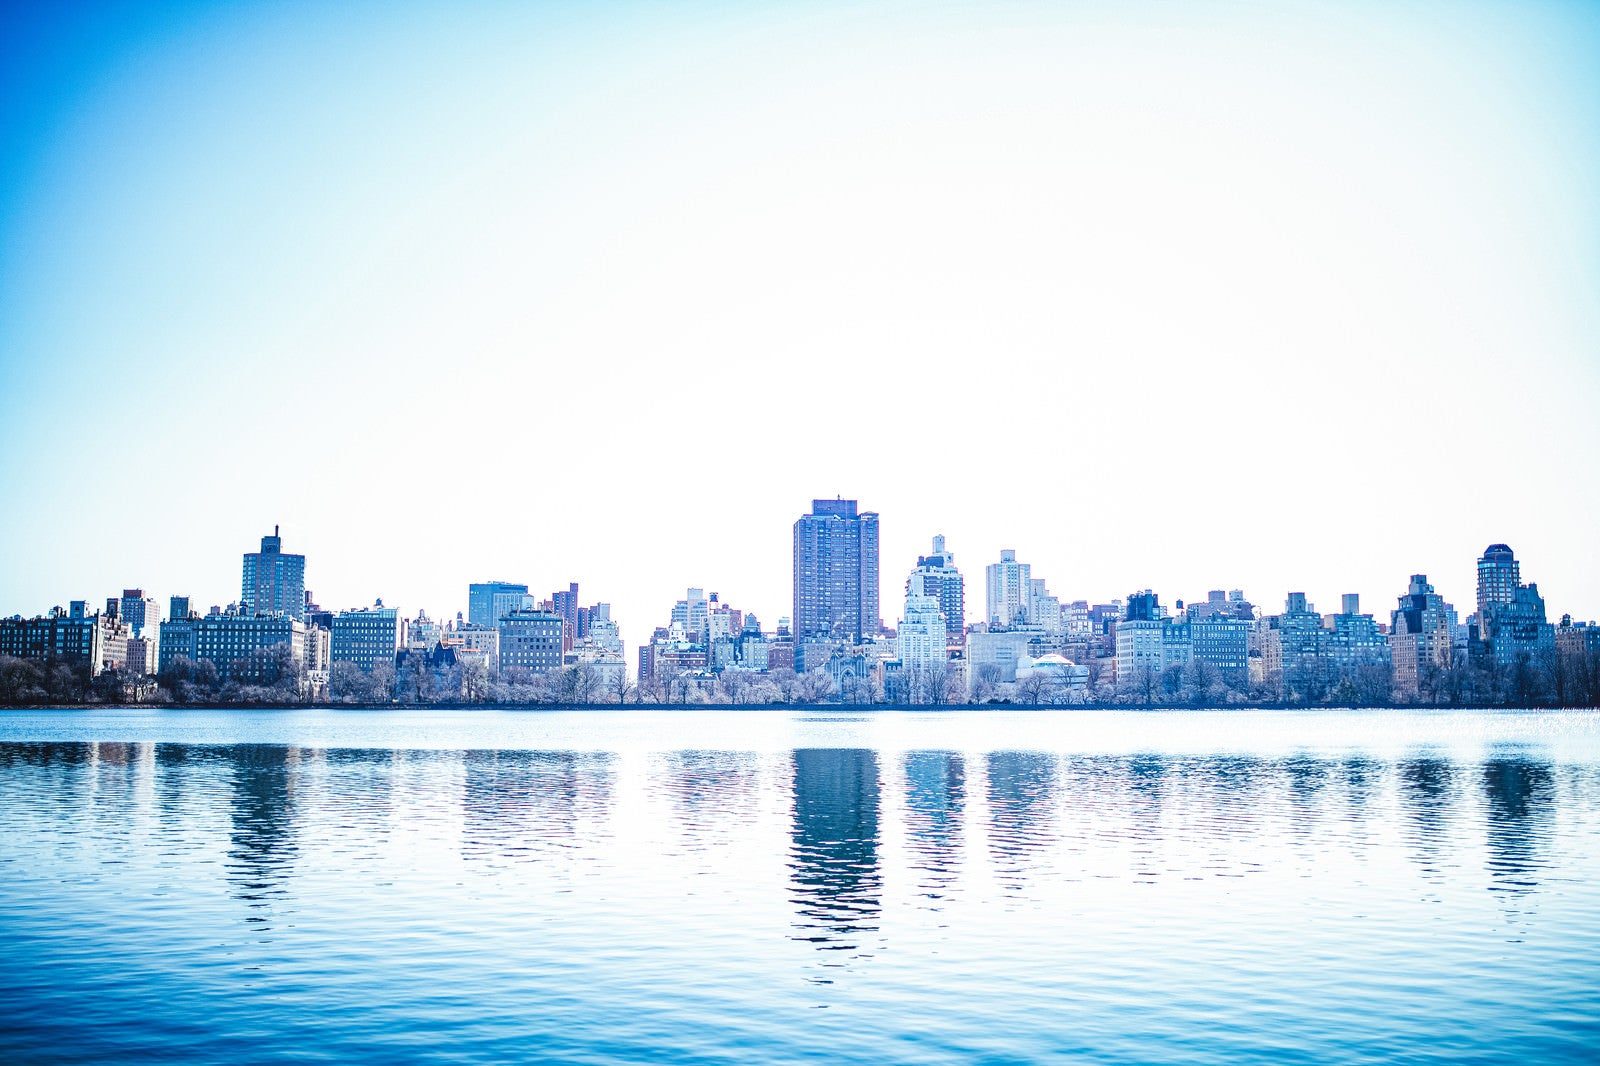 「川に映るニューヨークの街並み」の写真